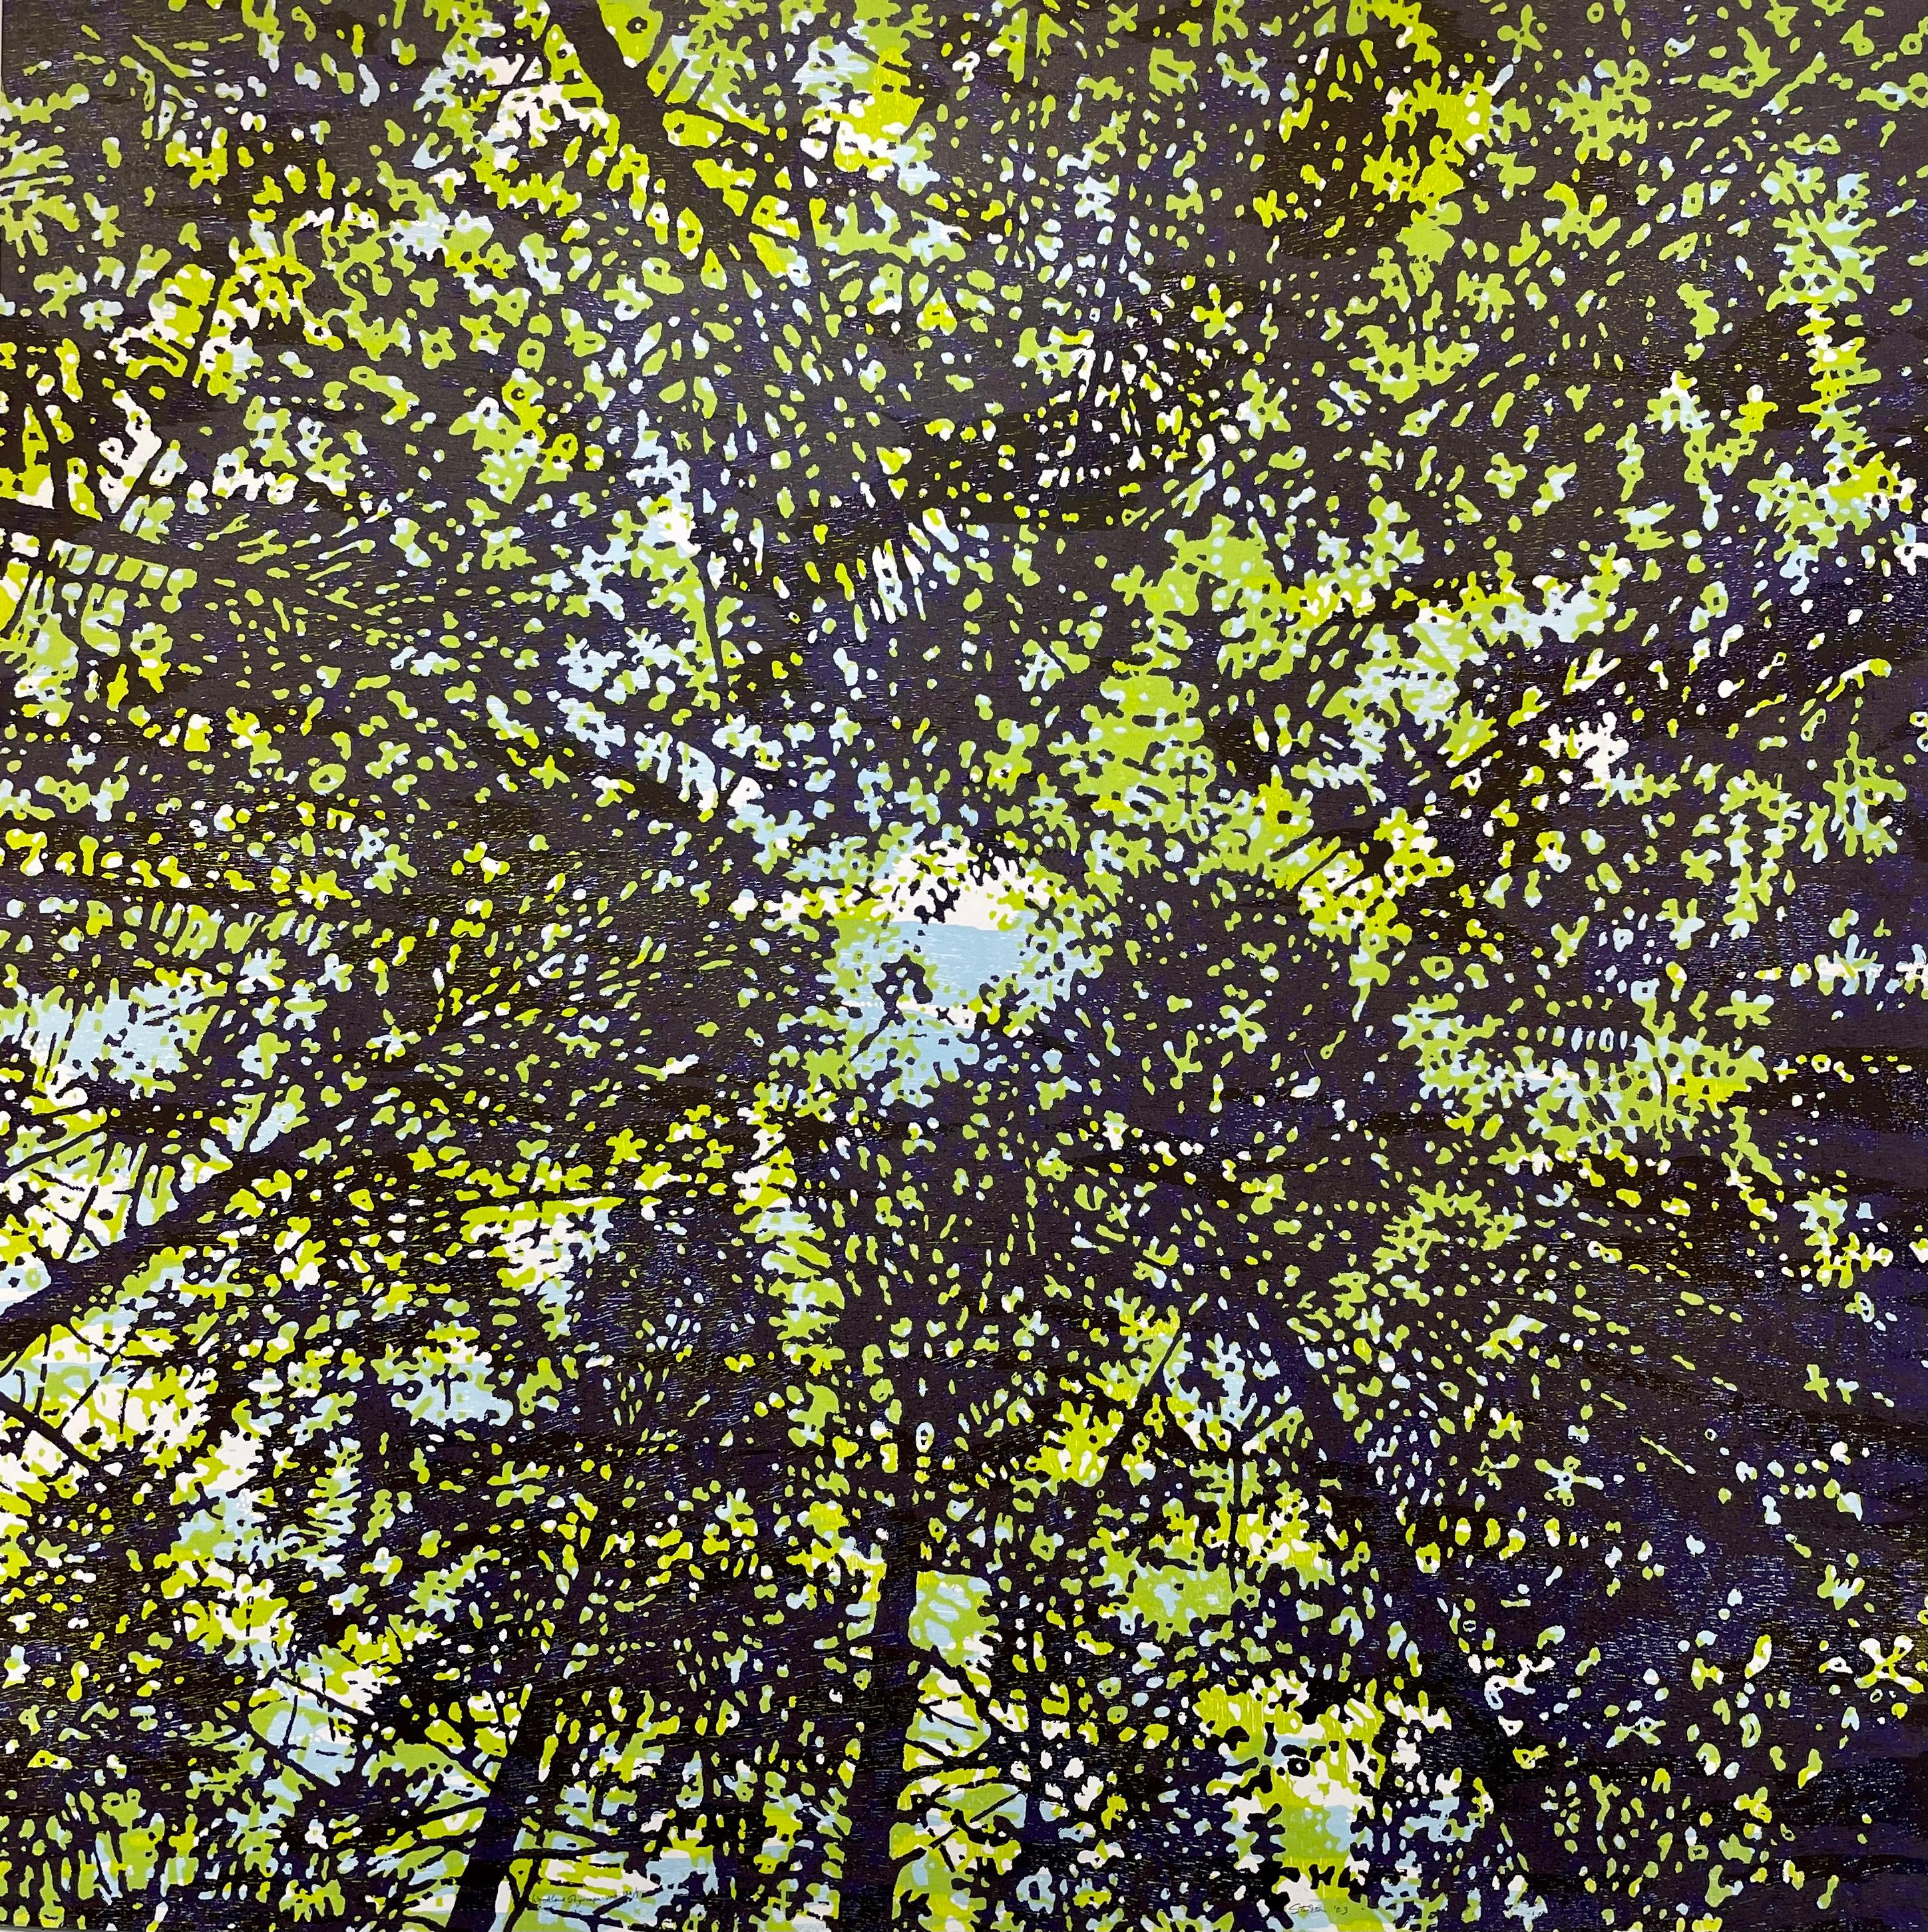 Paysage paysage boisé 136, ciel de la forêt, arbres, vert citron, bleu clair, aubergine foncée